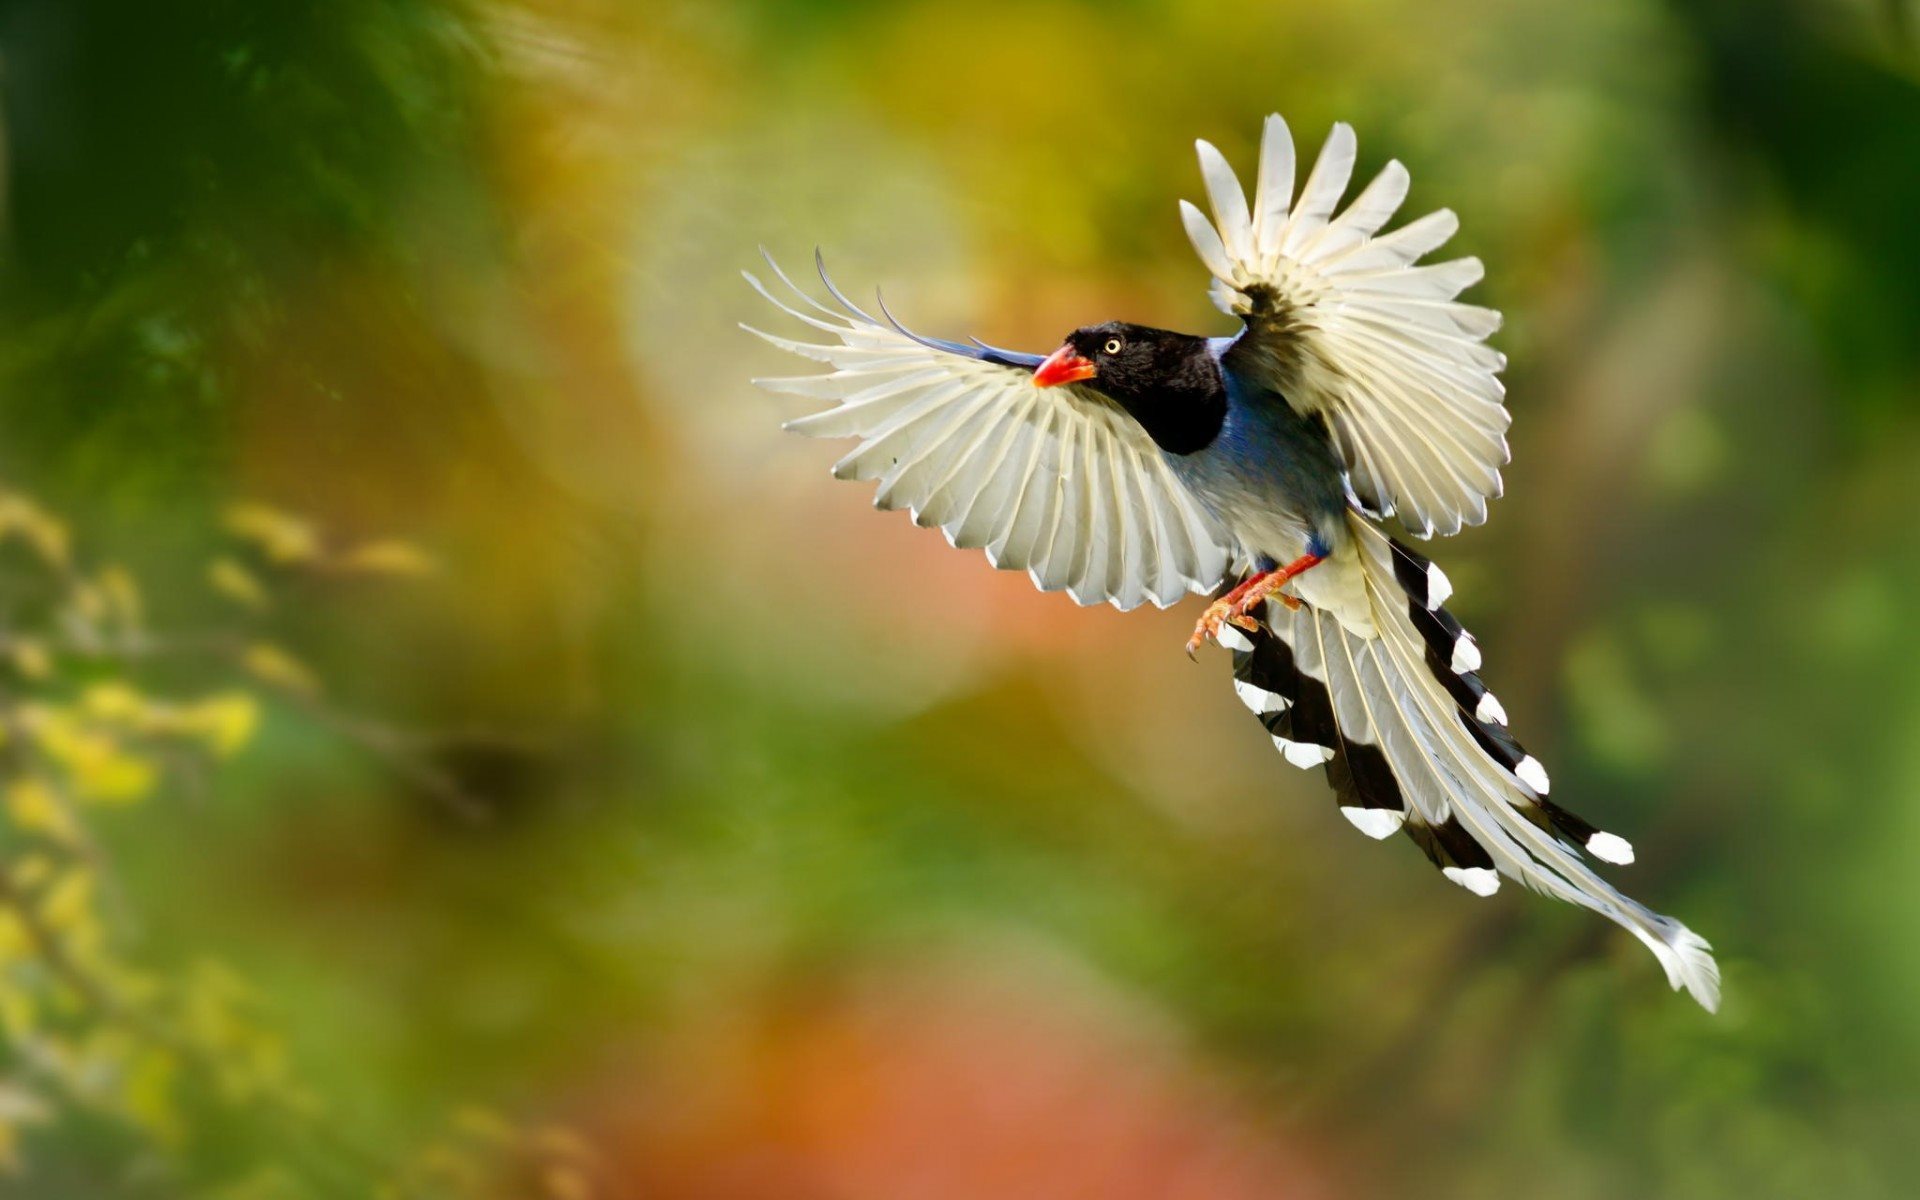 ダウンロード画像 鳥, の羽衣, 飛行, 翼